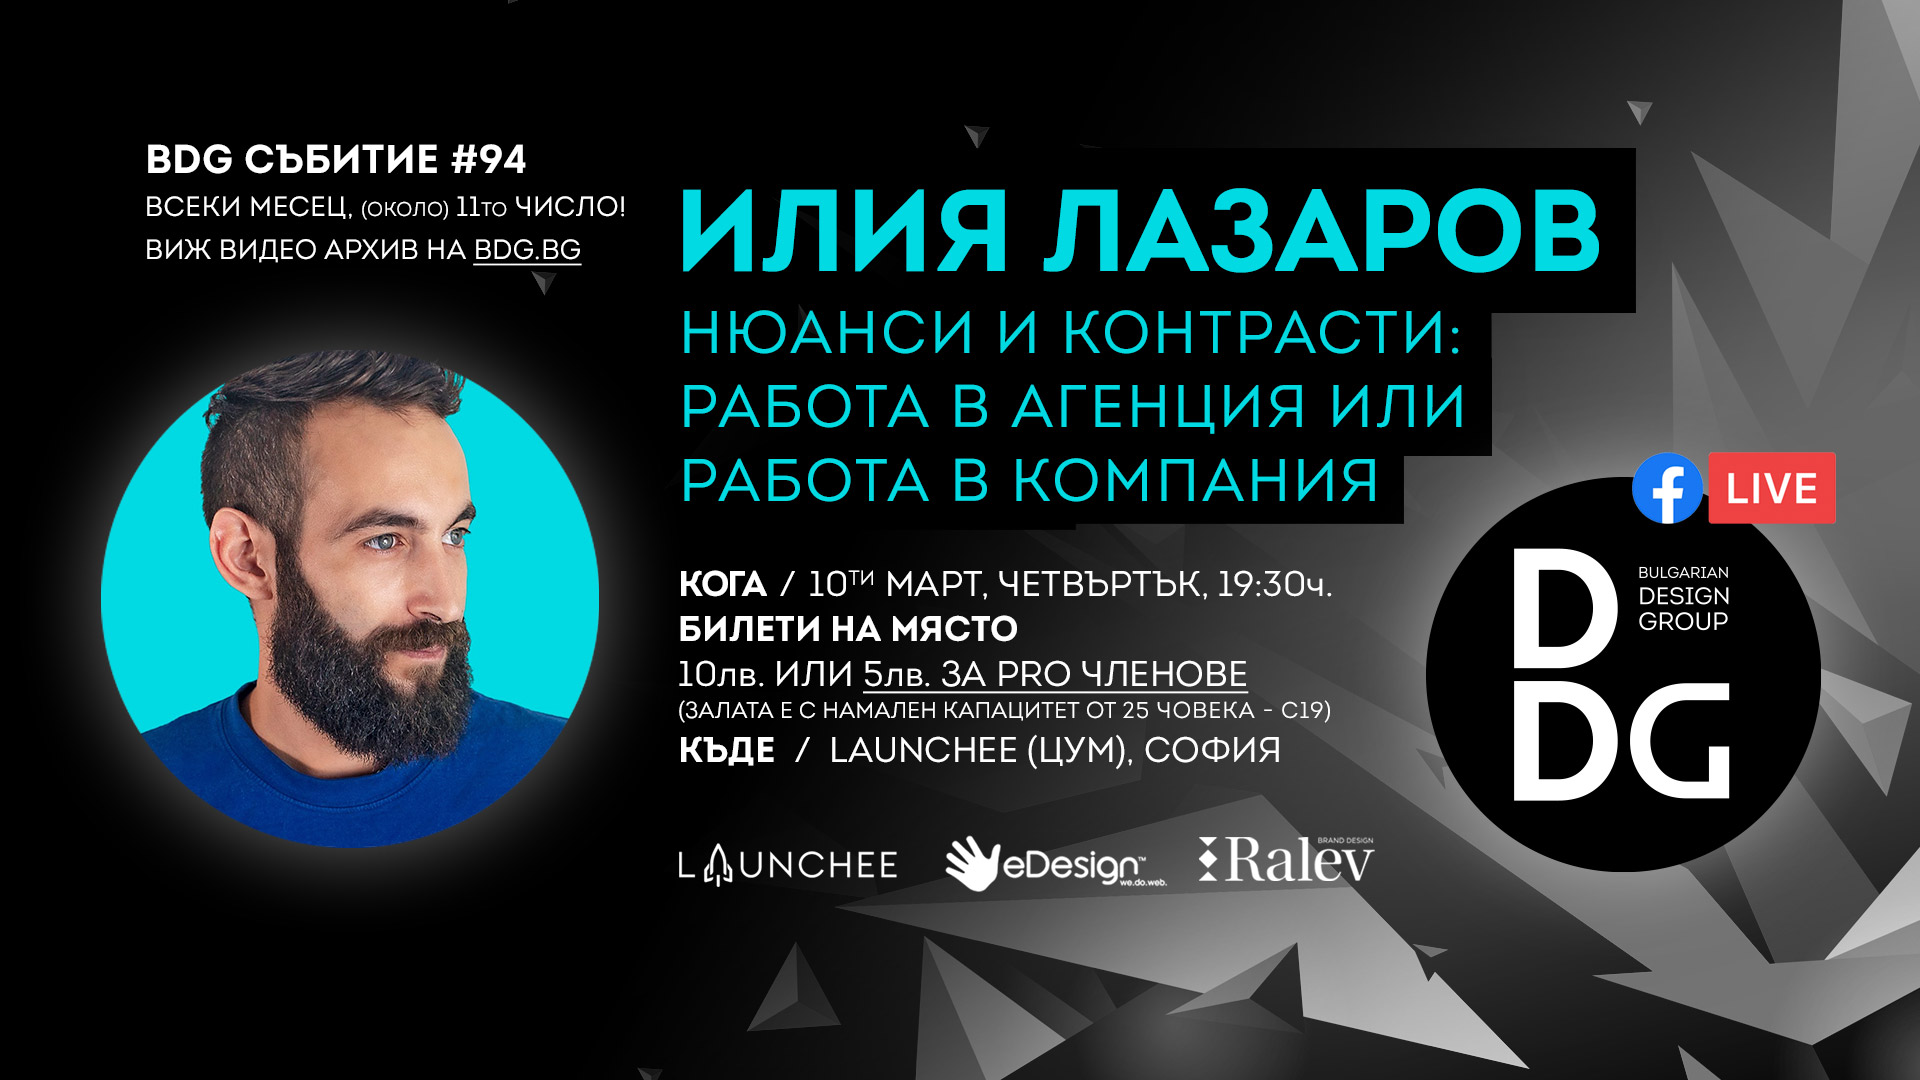 БДГ месечна дизайн среща с Илия Лазаров